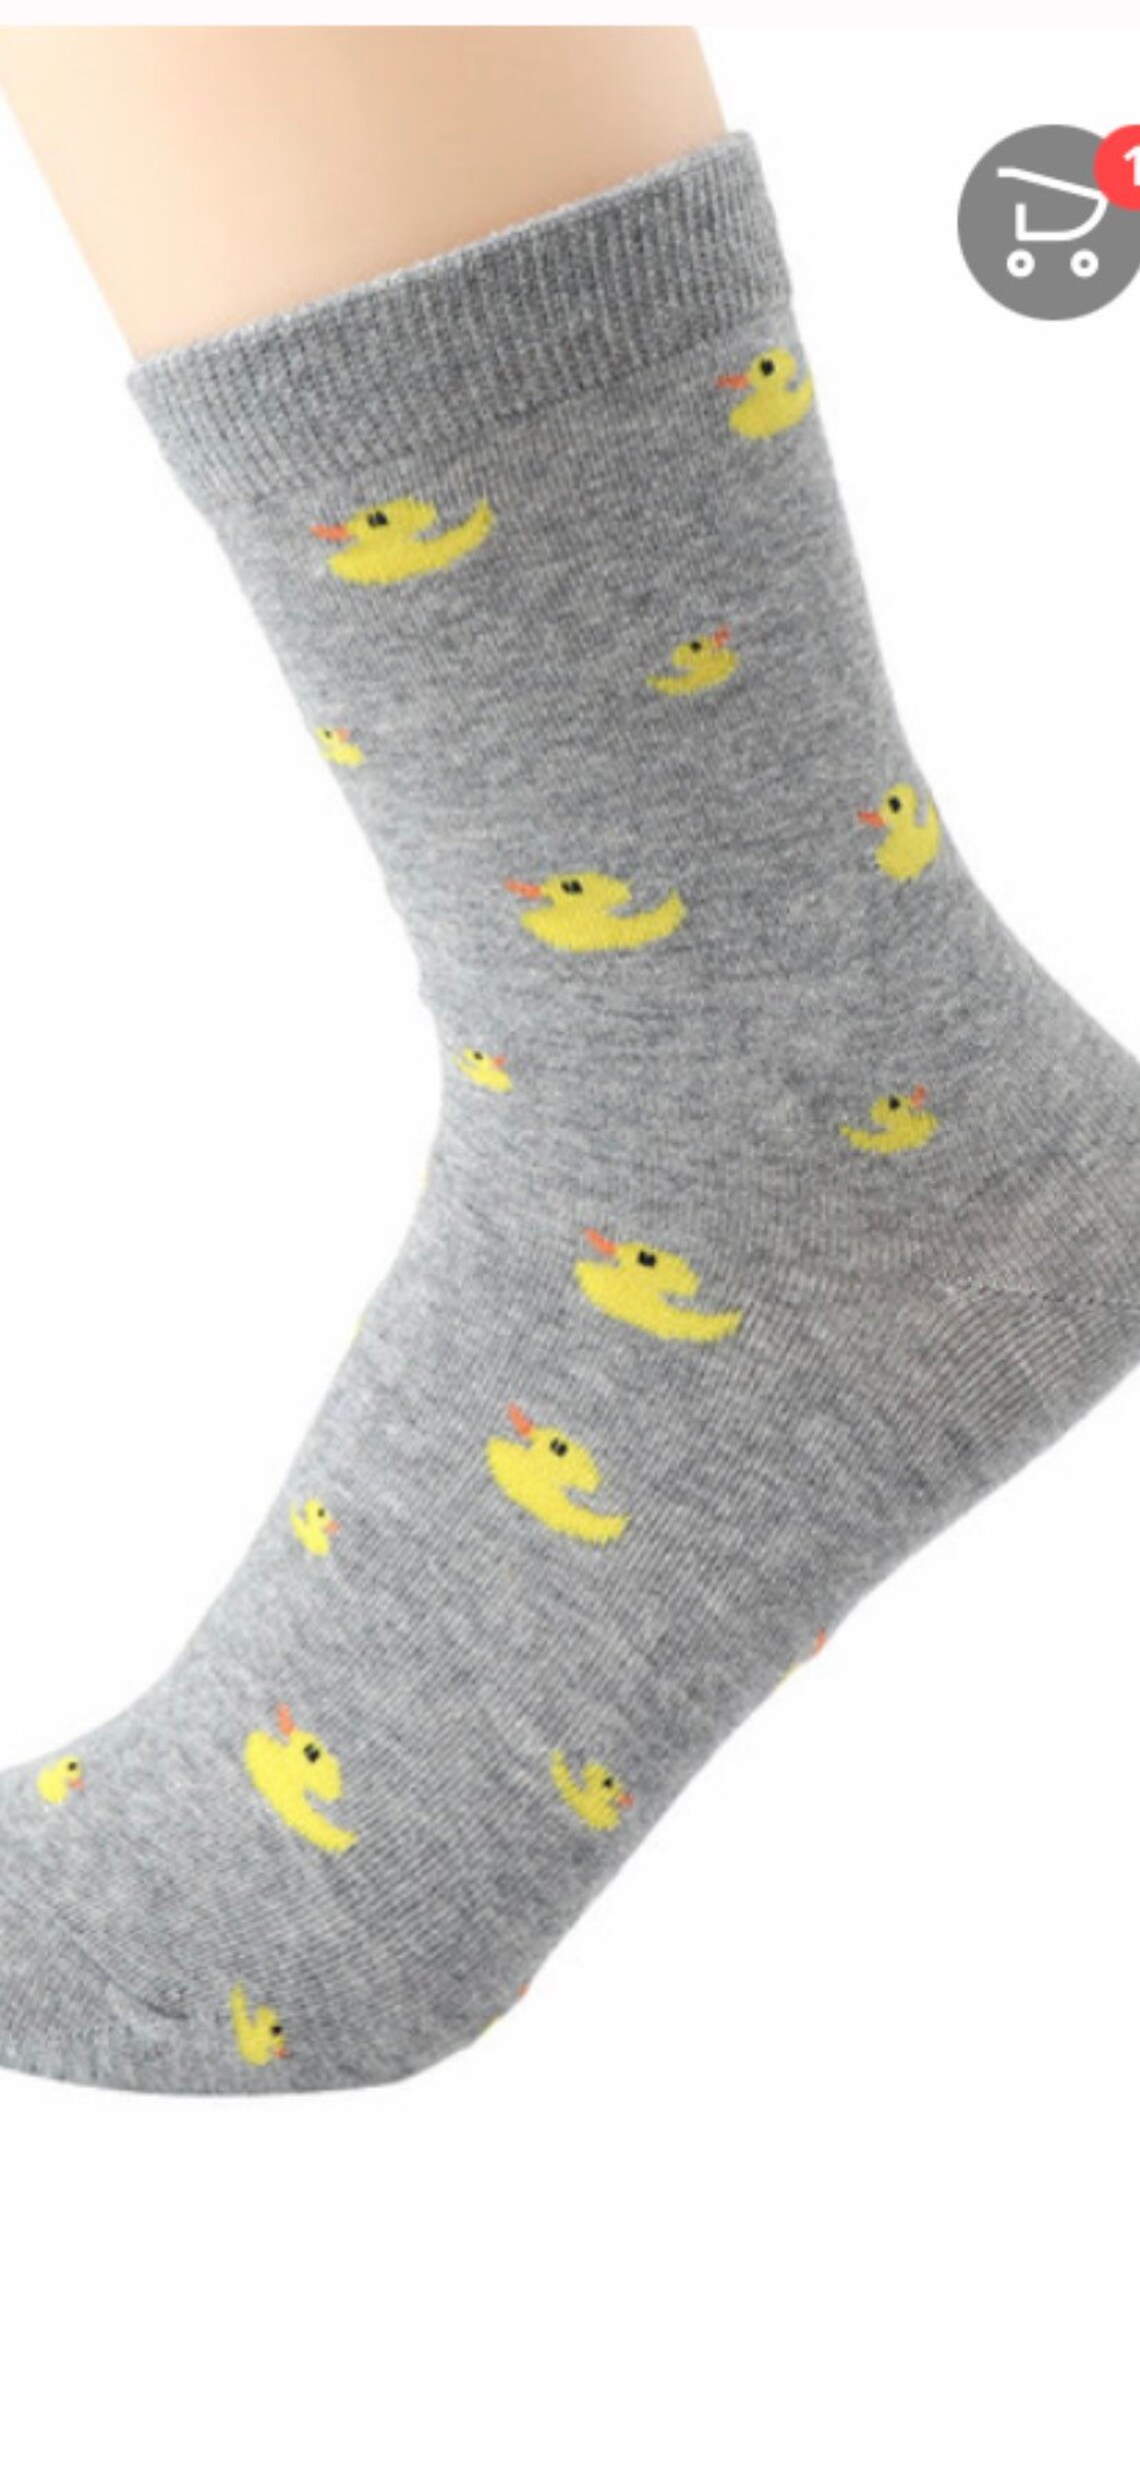 Duck Socks/Rubber Duck Socks/For Him or Her. | Etsy